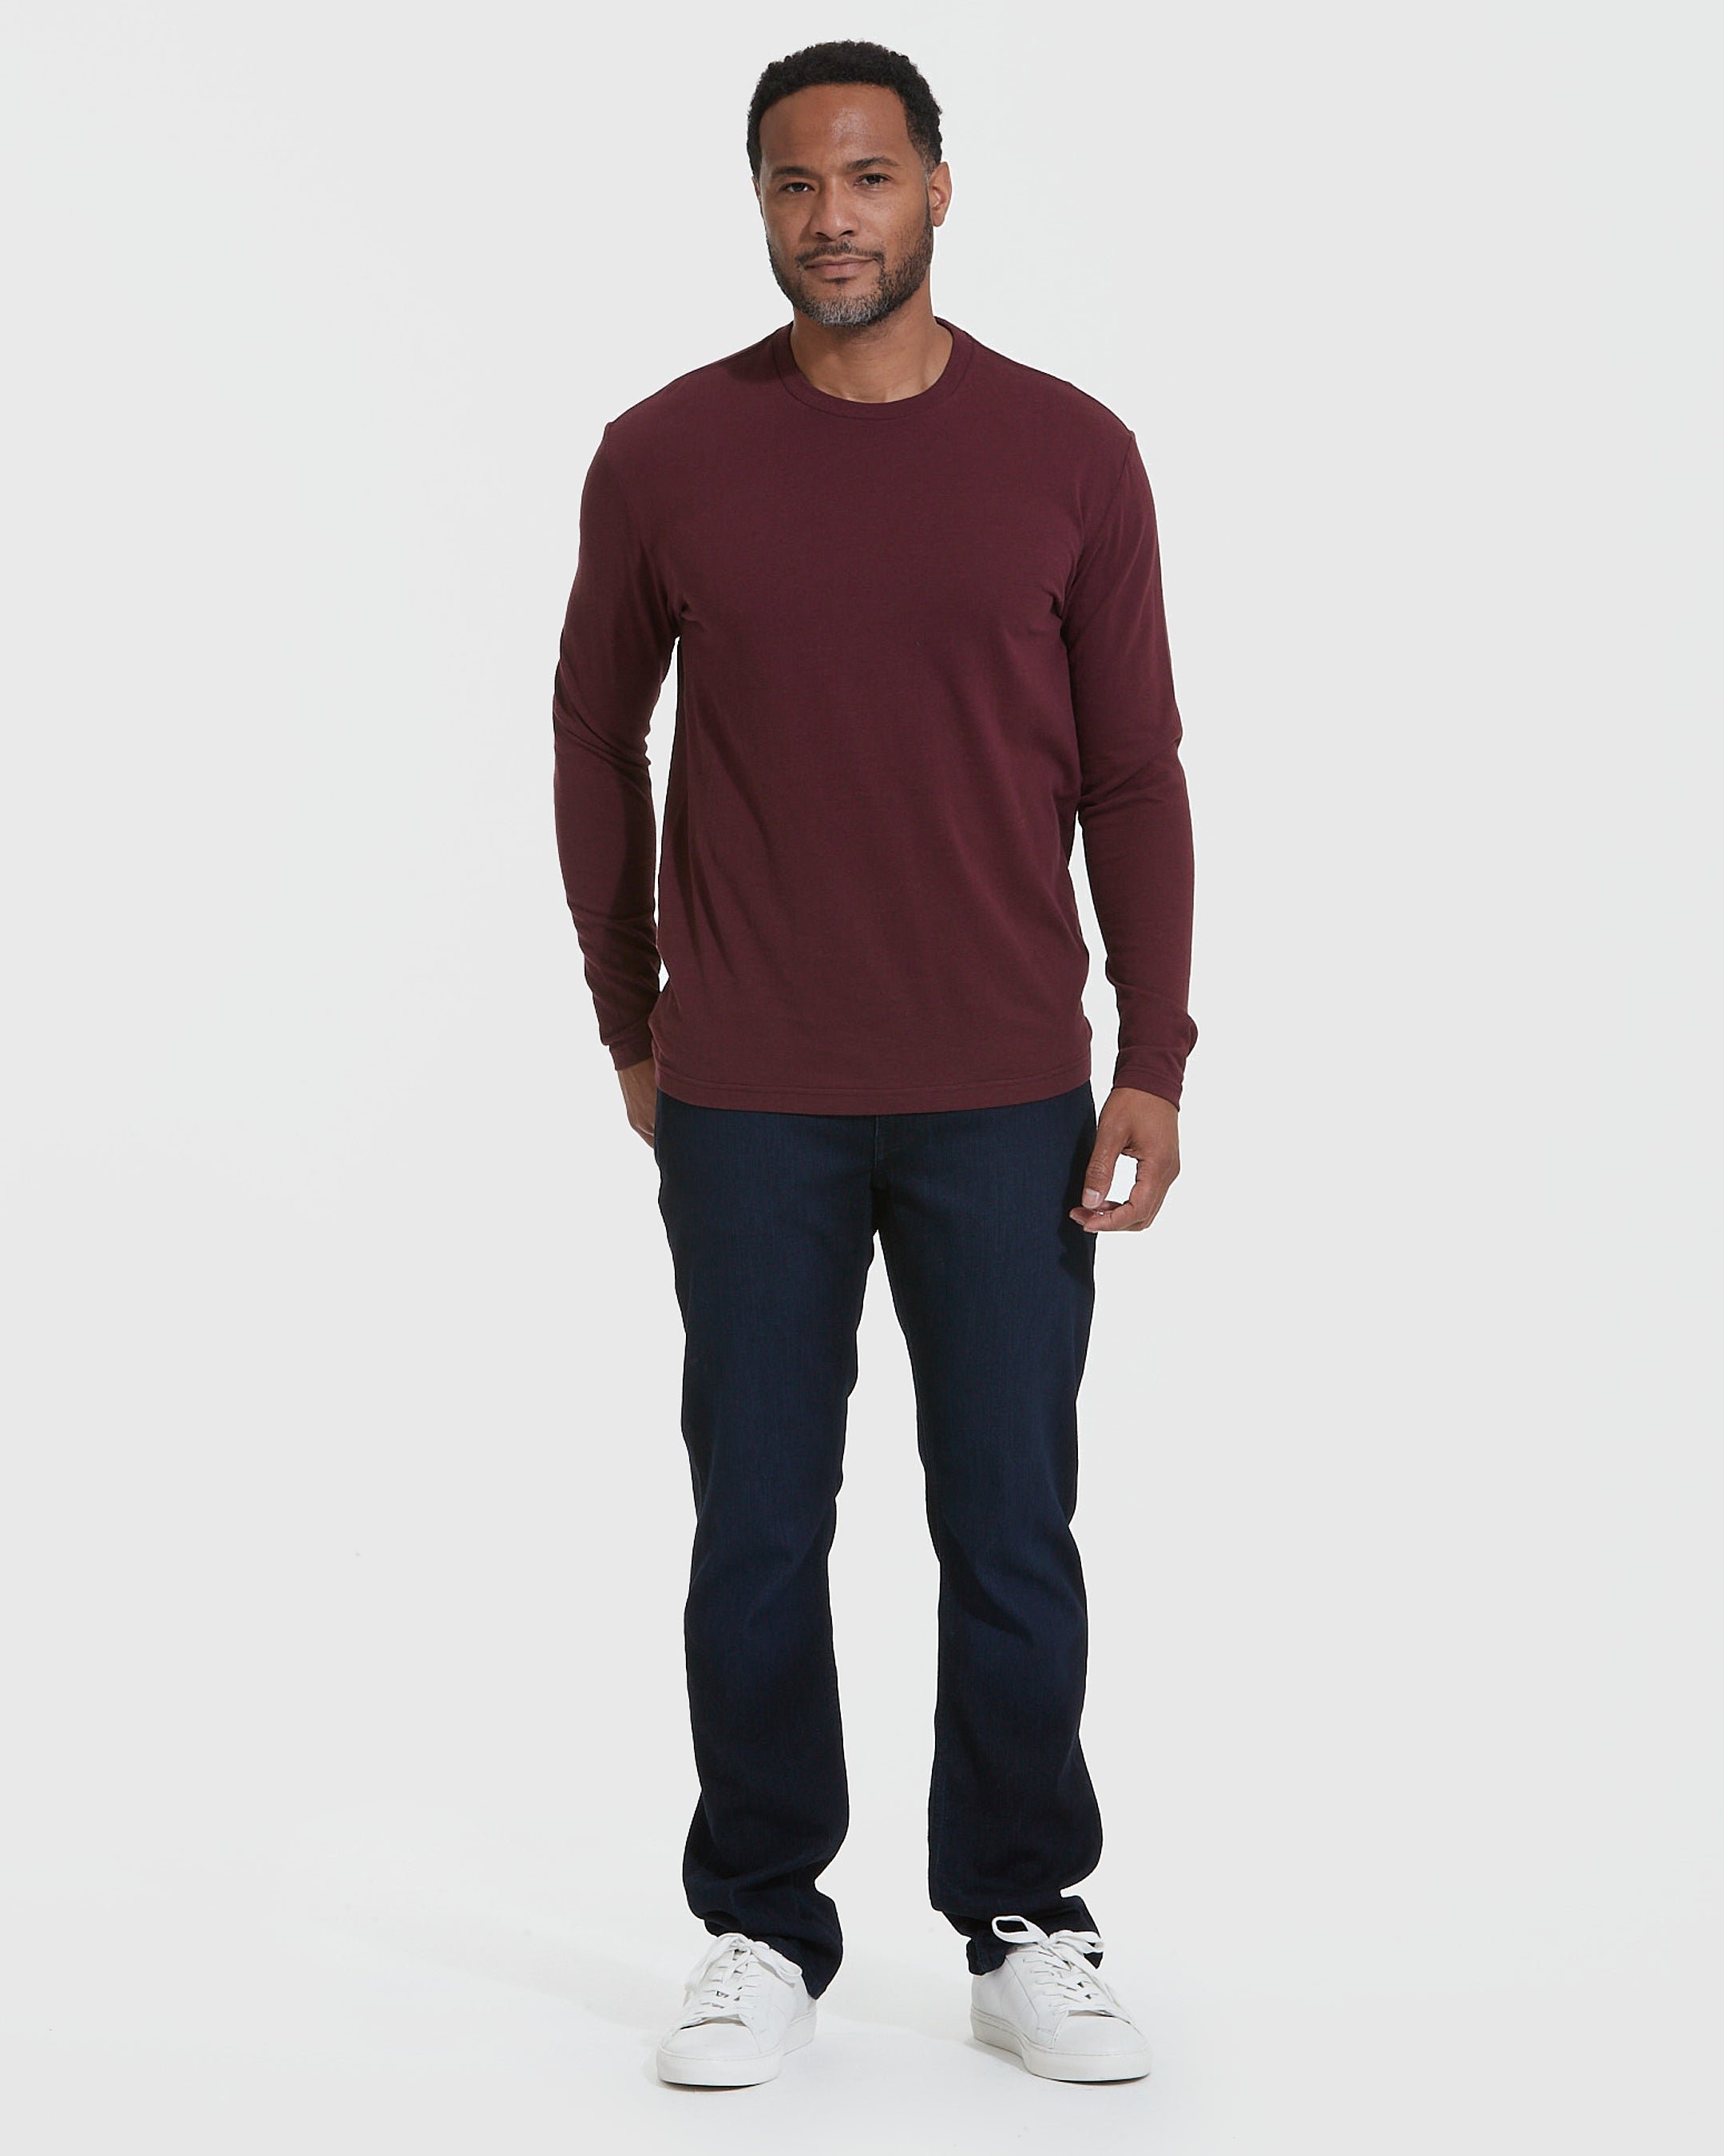 Mahogany Long Sleeve T-Shirt